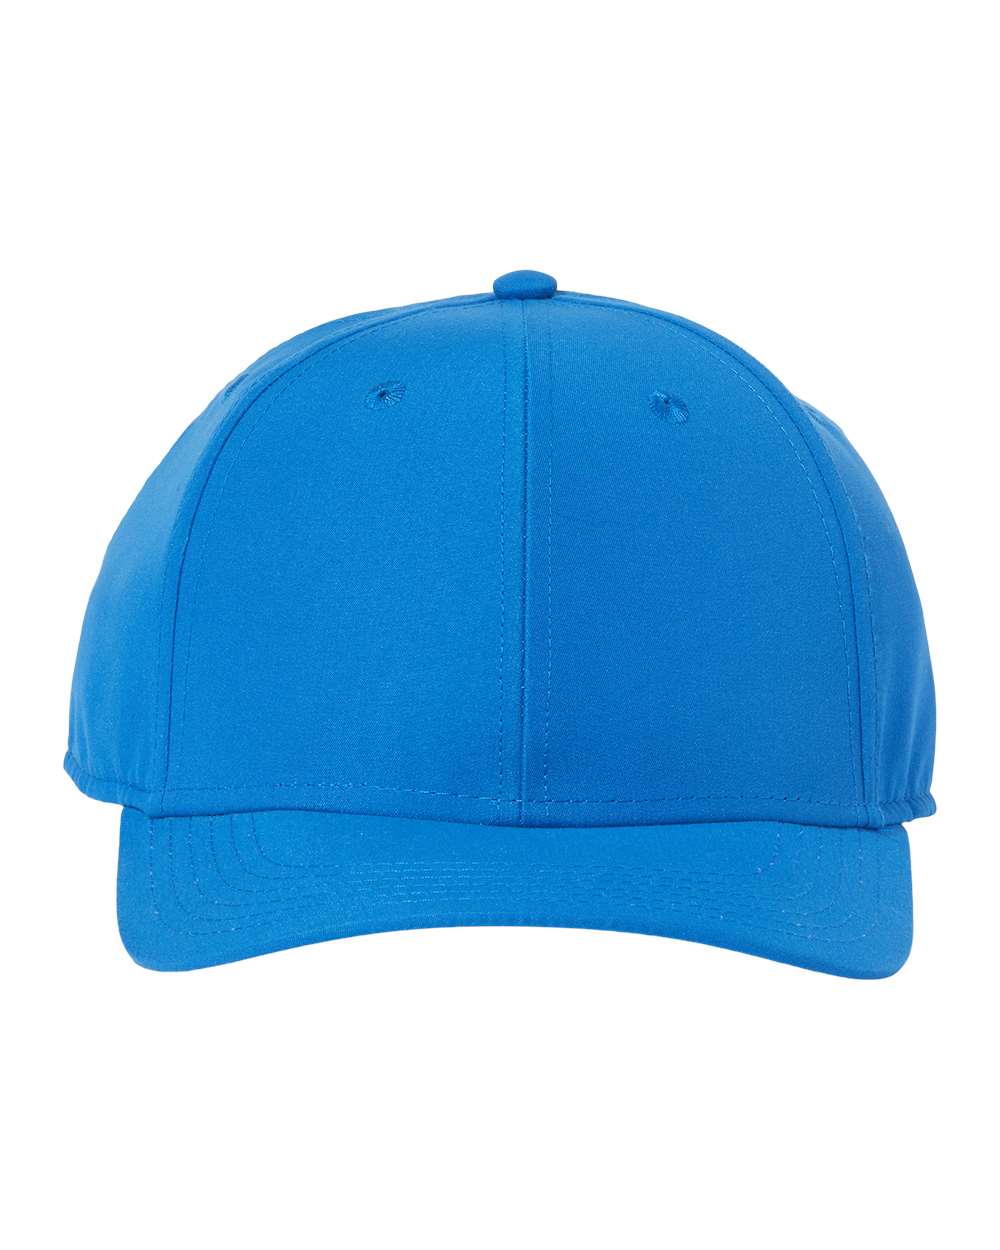 Customizable Atlantis Headwear Recy Feel Cap in royal blue